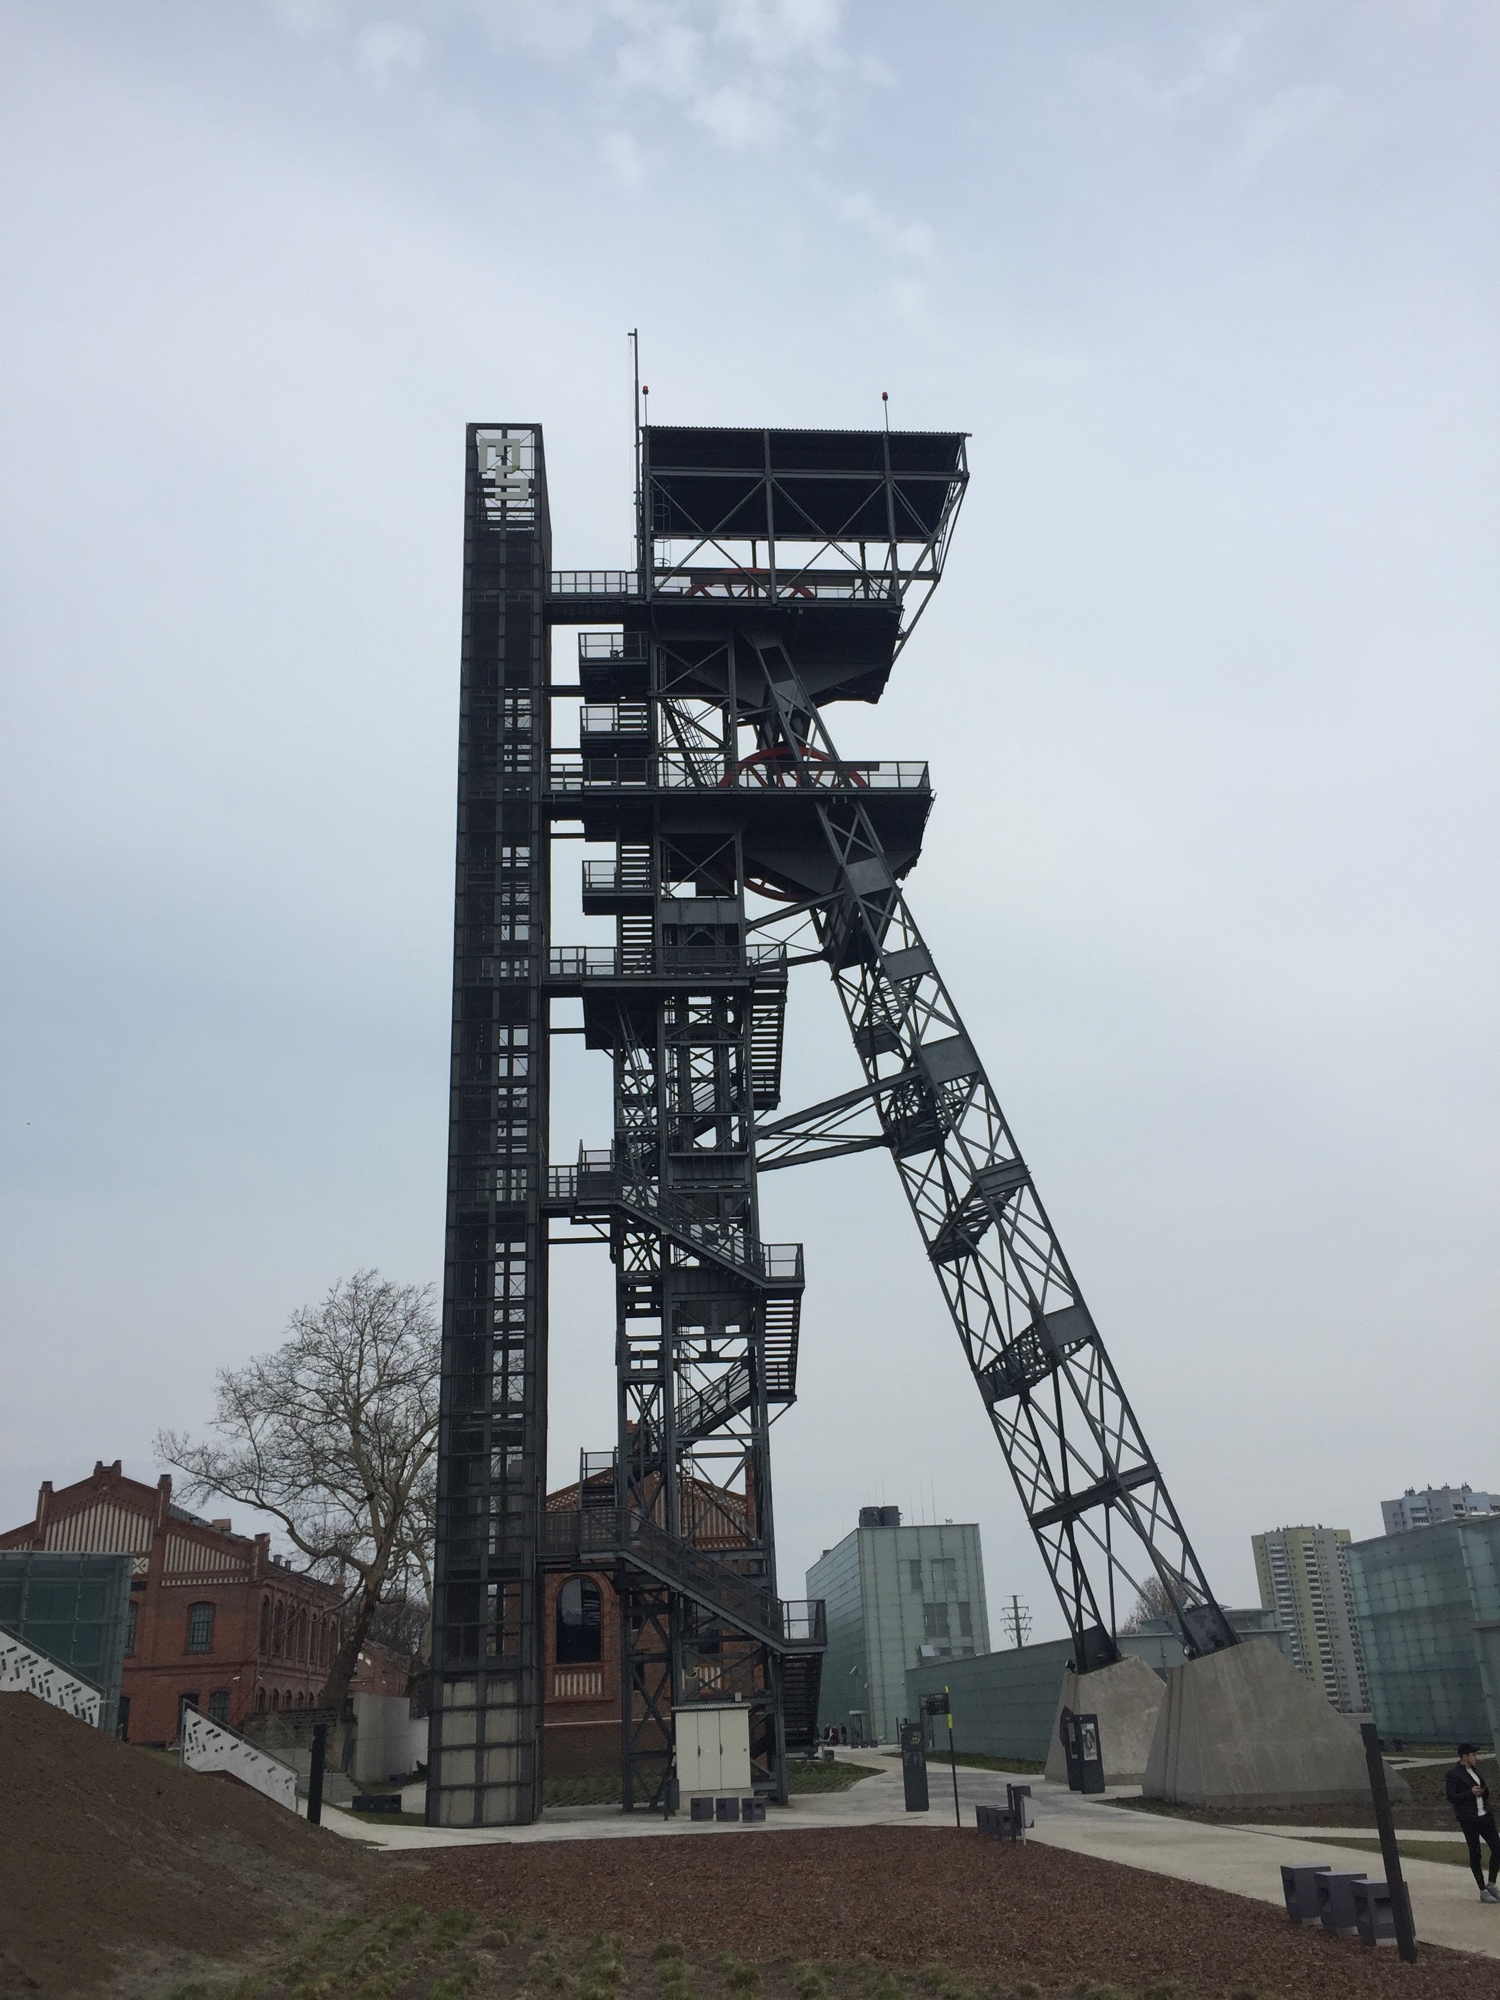 der Aussichtsturm auf dem Gelände des Muzeum Śląskie ragt als gerüstartige Konstruktion in den bewölkten Himmel